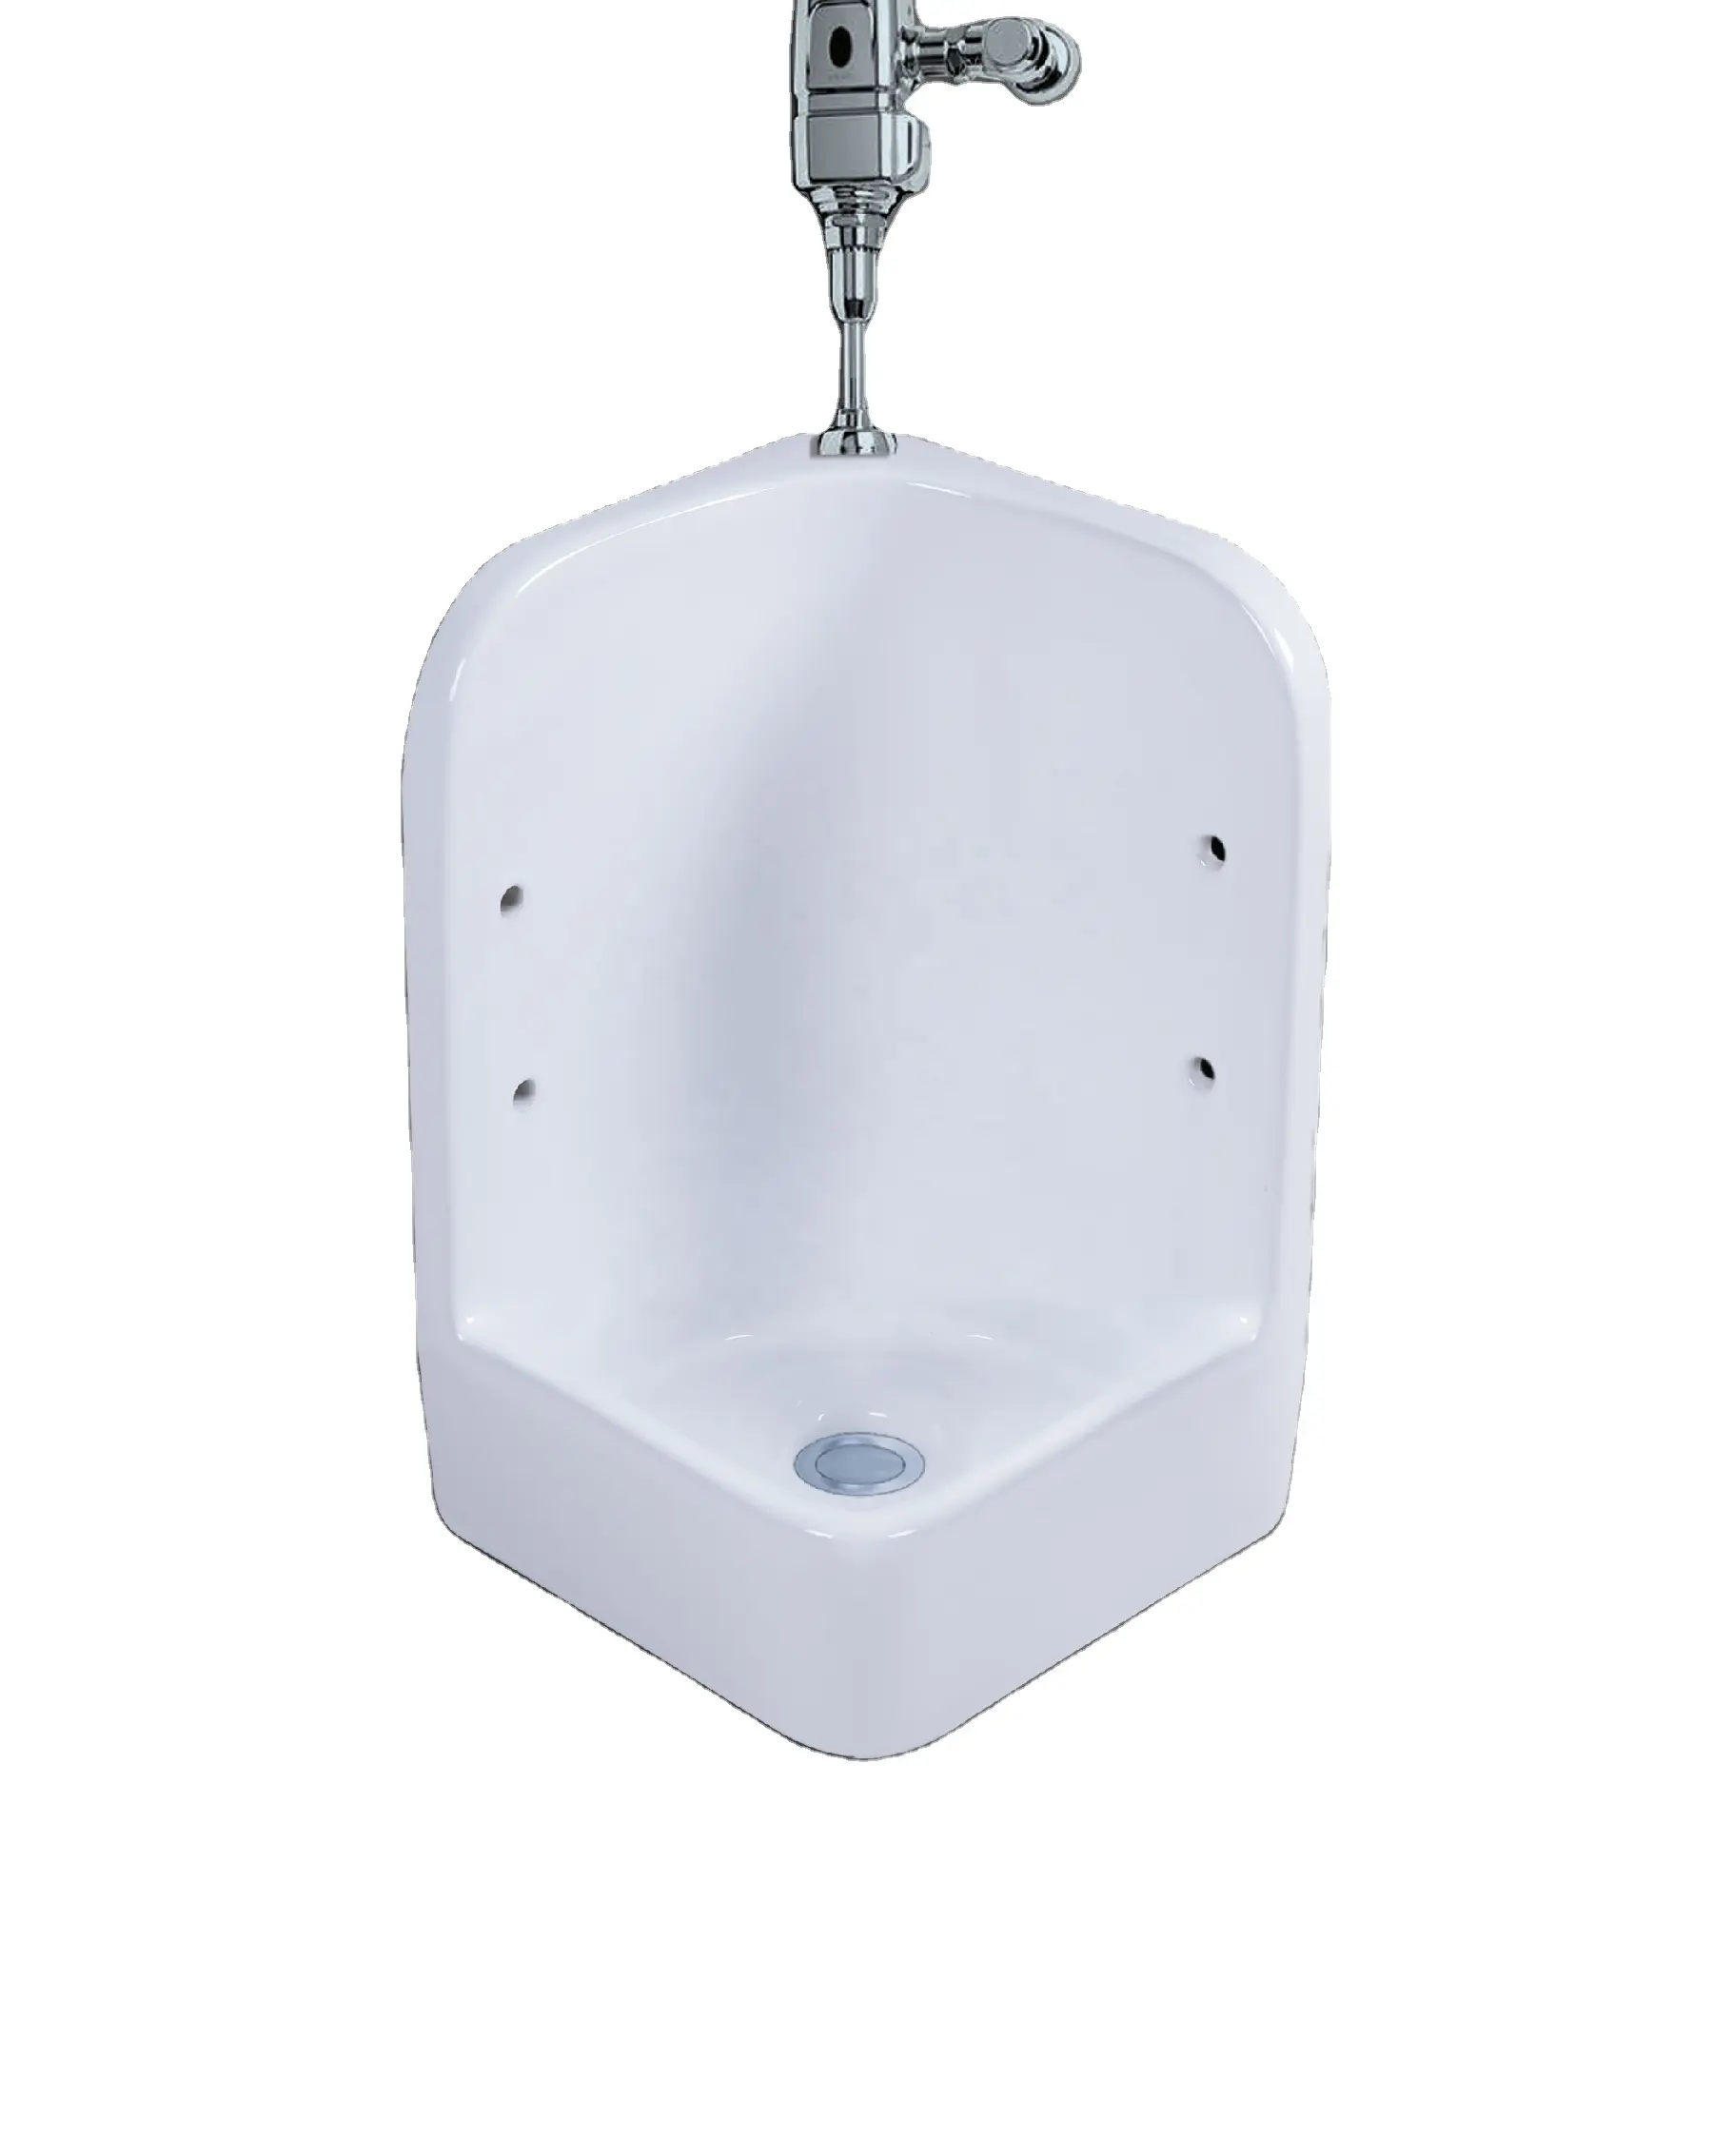 男性トイレ新デザイン小便器メーカー壁掛け小便器トイレ高品質セラミック